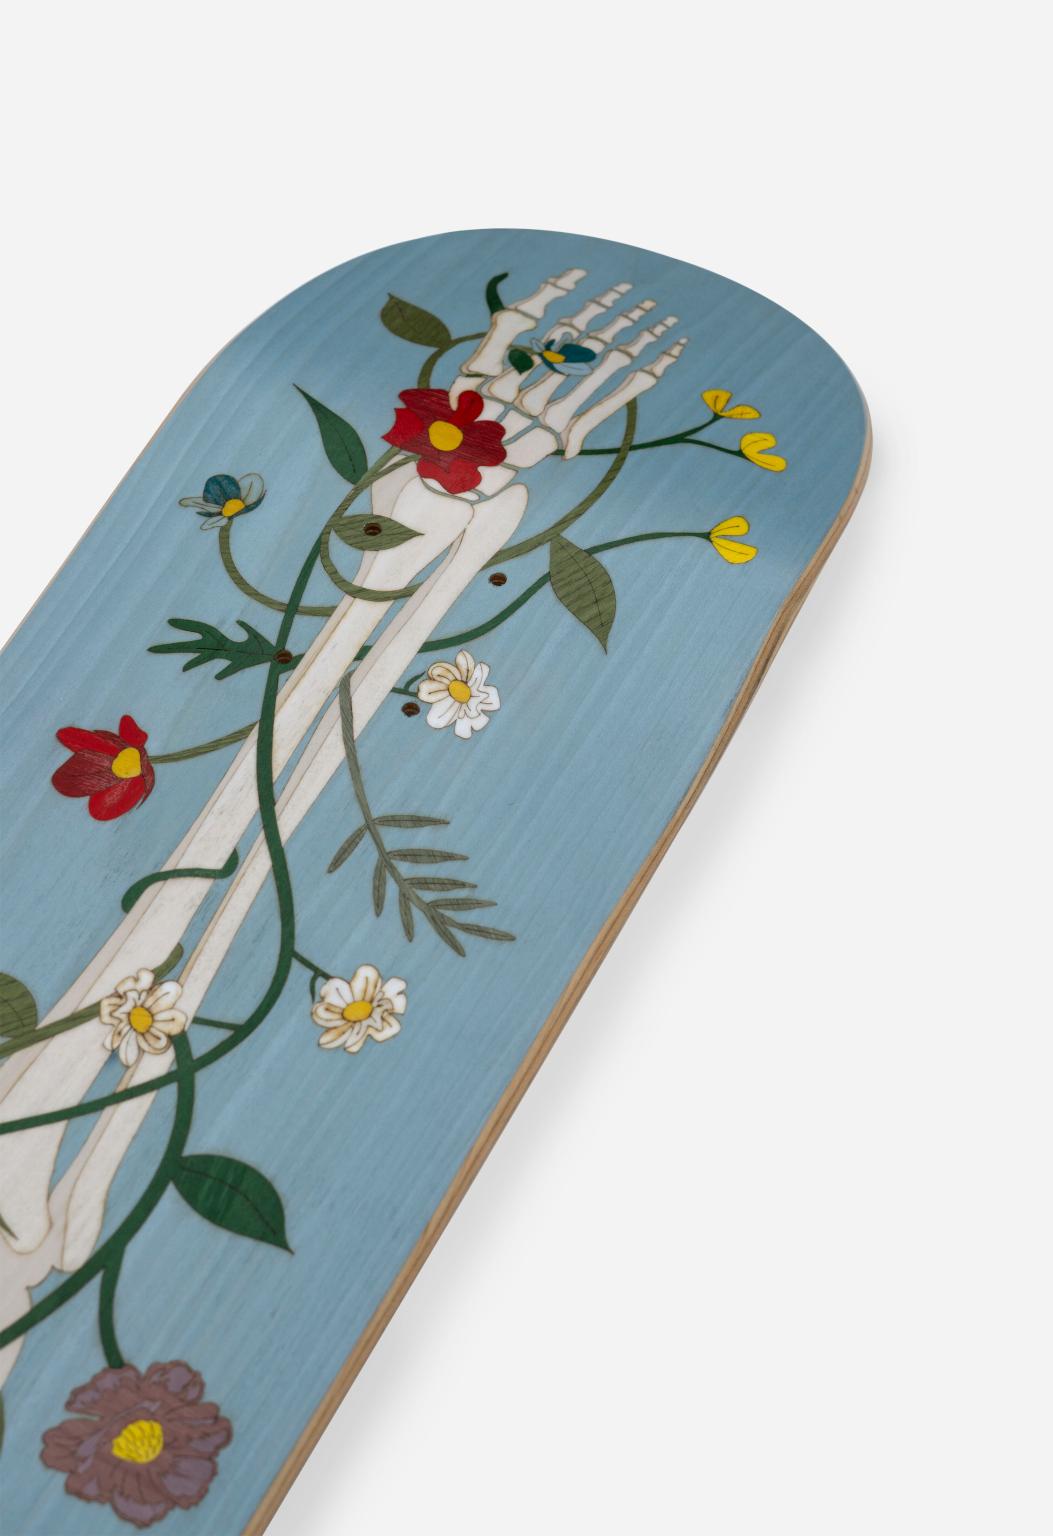 Leben-nach-dem-Leben-Tafel
Old Skull Board/ Life After Life Board ist ein dekoratives Skateboard-Tischchen,
erhältlich in verschiedenen Farbvarianten und mit einem eingefügten Bild, das die Kontinuität simuliert
della vita dopo la morte.
Das Old